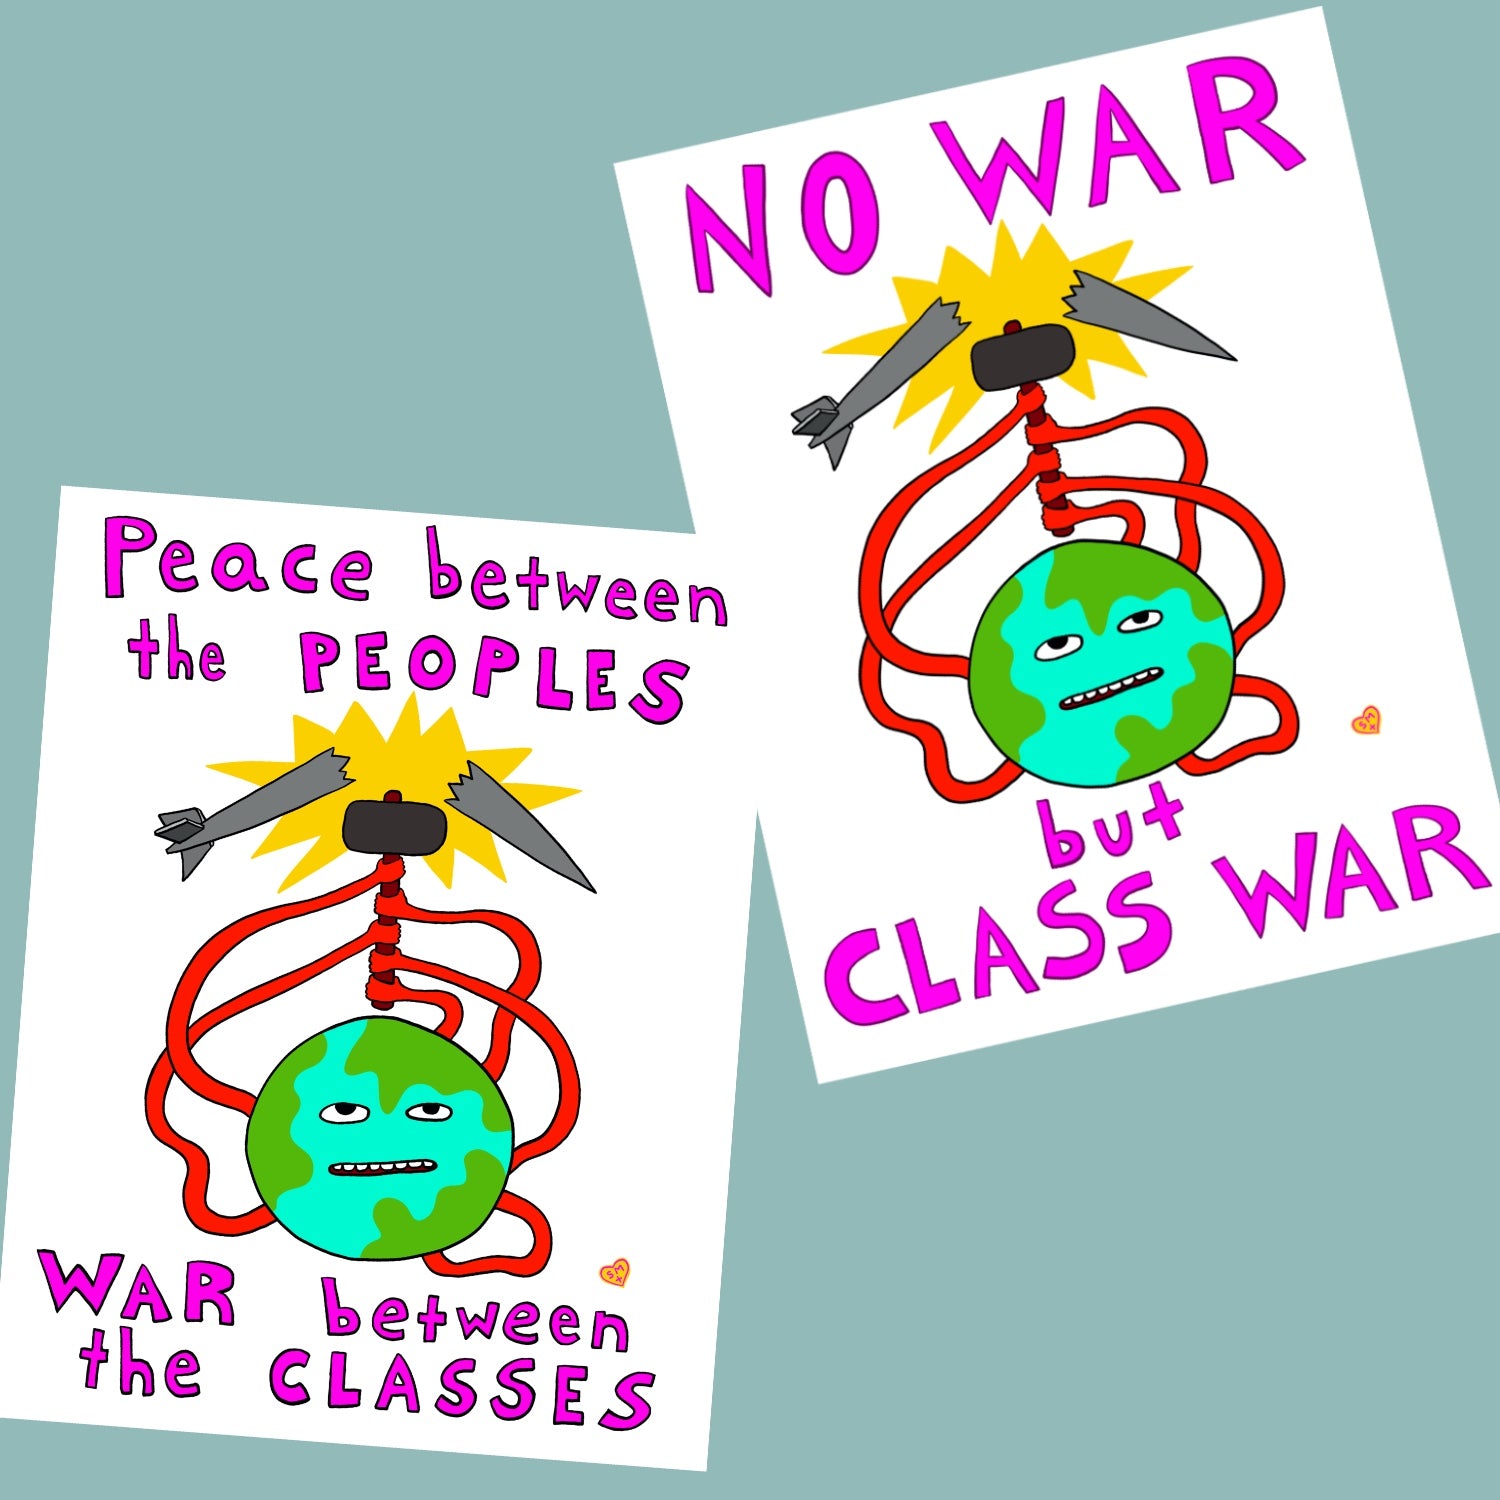 No War but Class War (print it yourself)